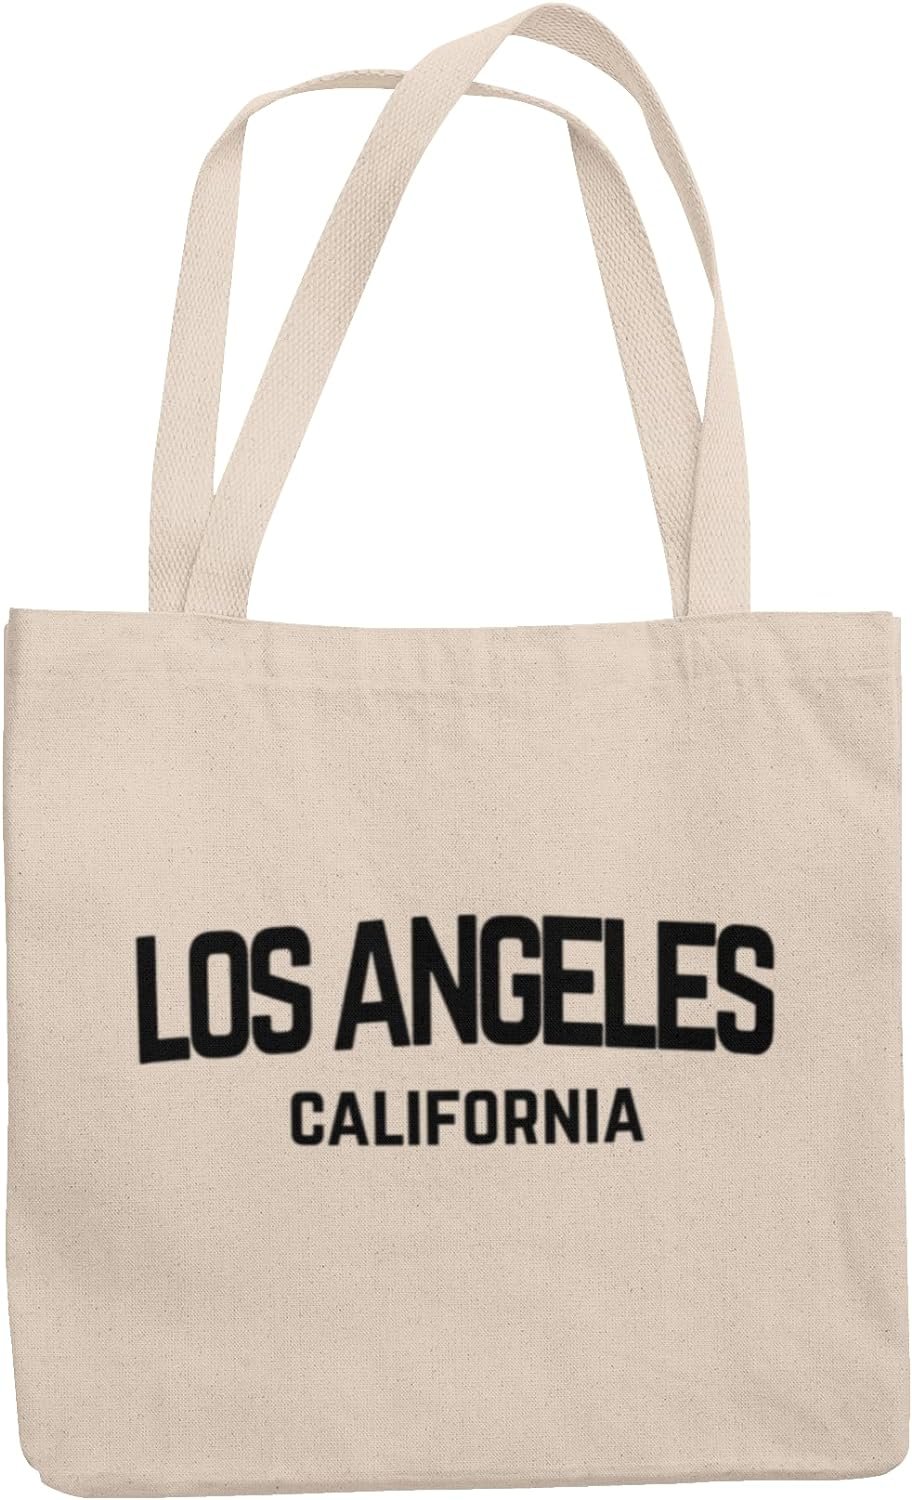 Los Angeles - Natural Handle - Tote Bag Vintage Style Retro California Cotton Canvas